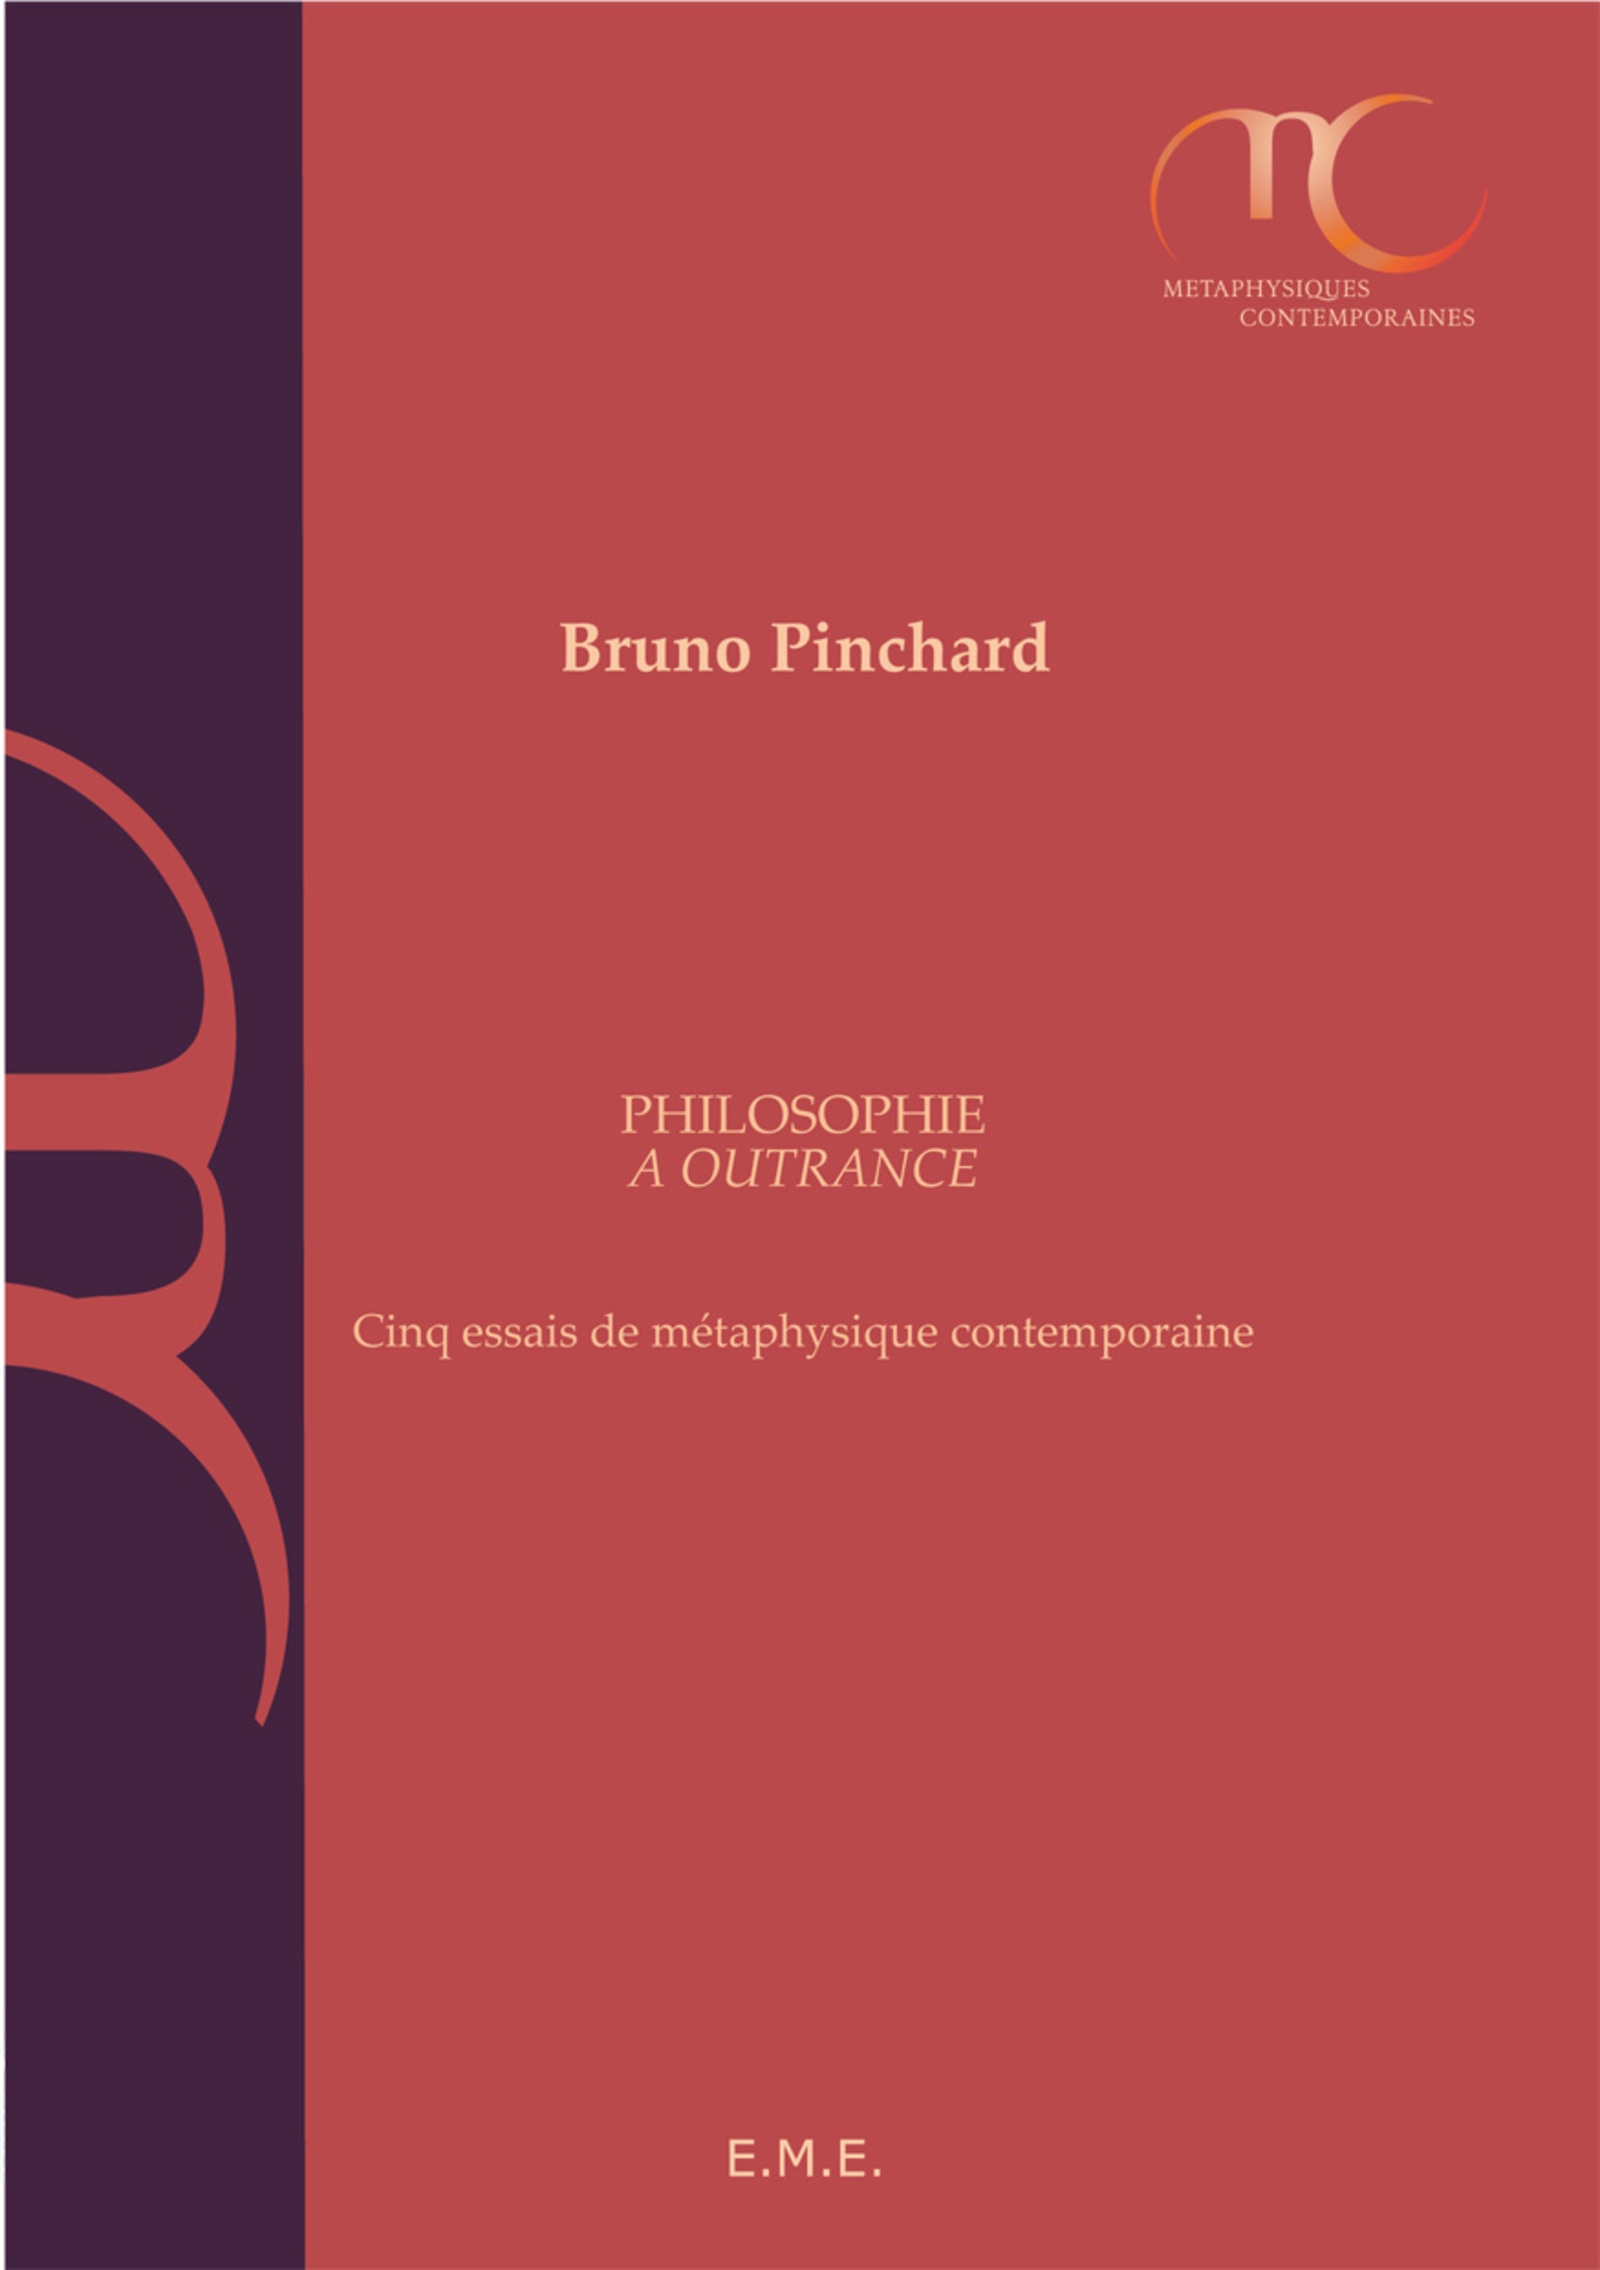 Philosopher à outrance, Cinq essais de métaphysique contemporaine (9782875250278-front-cover)